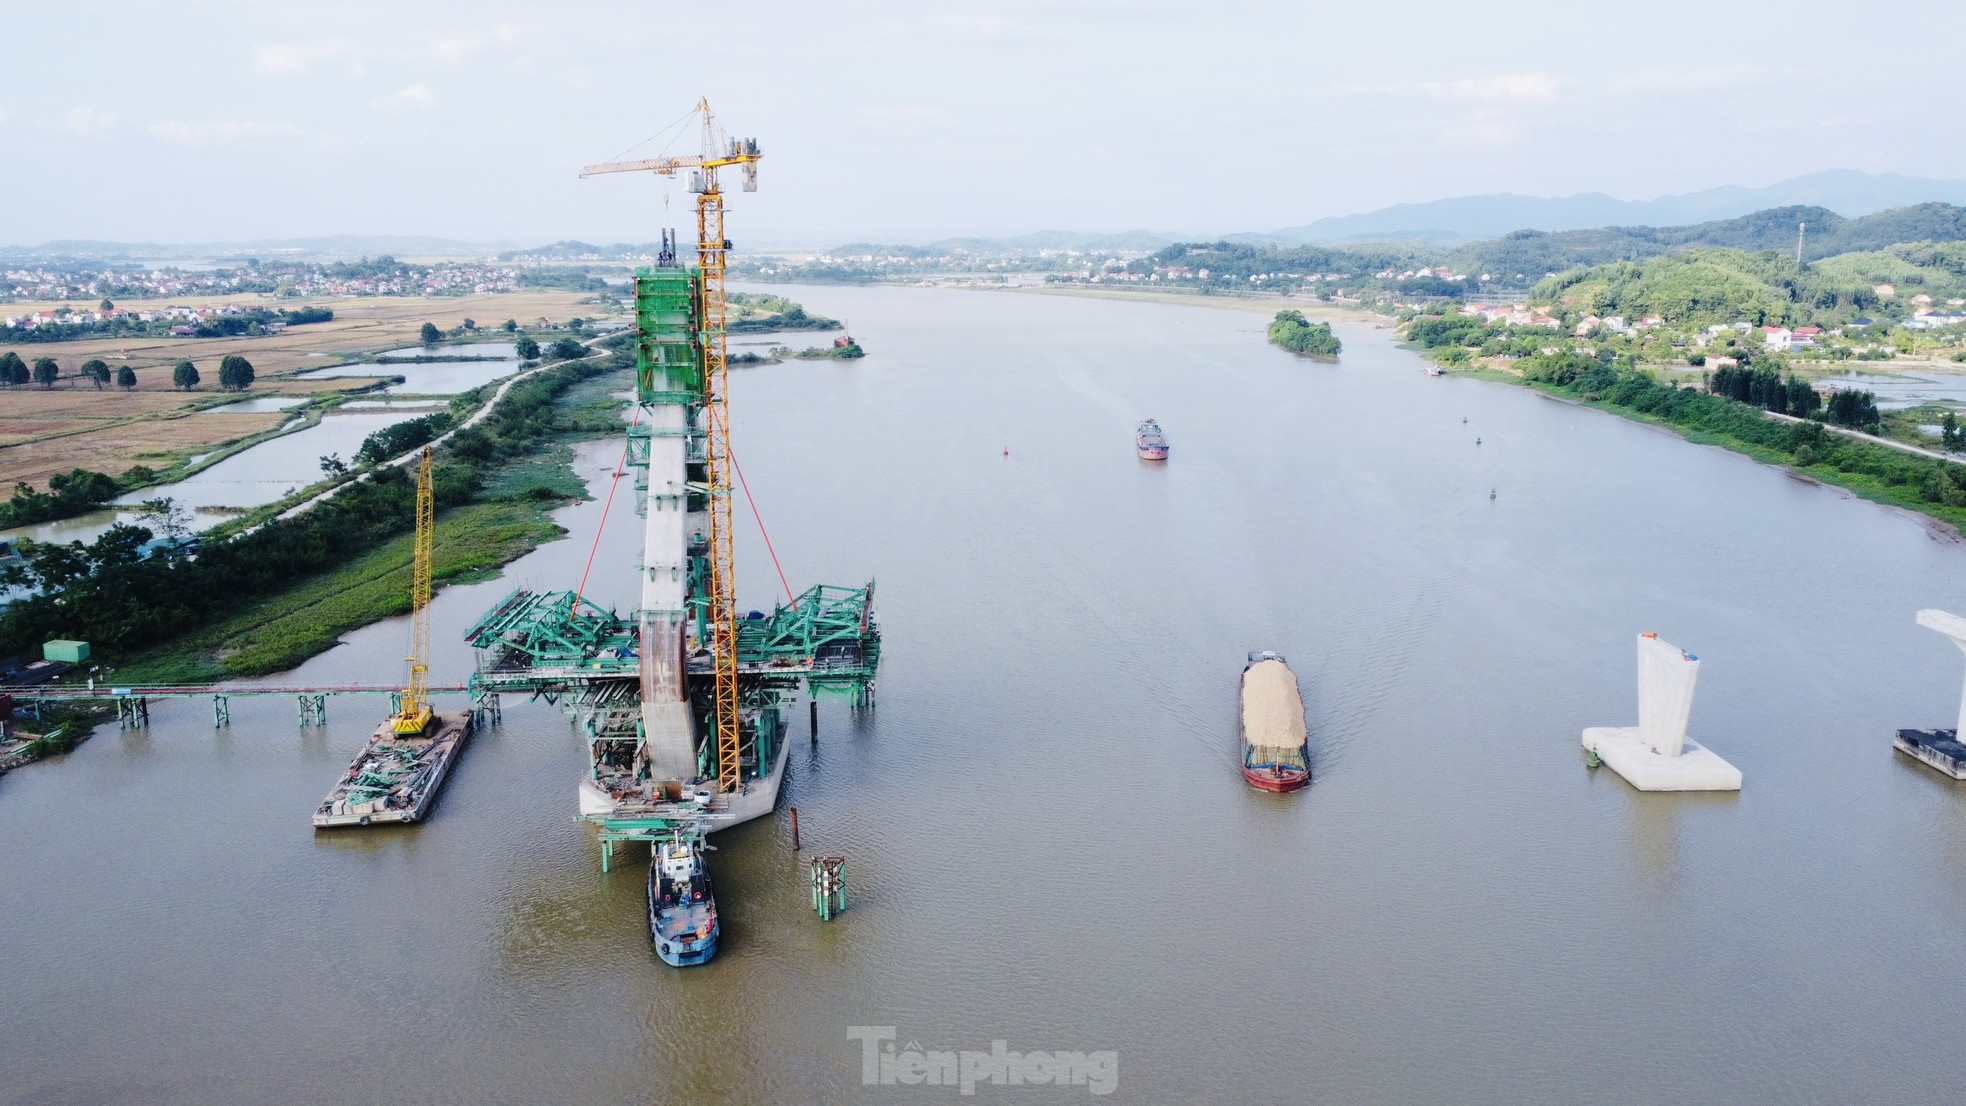 Cầu dây văng trị giá gần 1.500 tỷ đồng nối Bắc Giang - Hải Dương sắp thành hình - Ảnh 4.